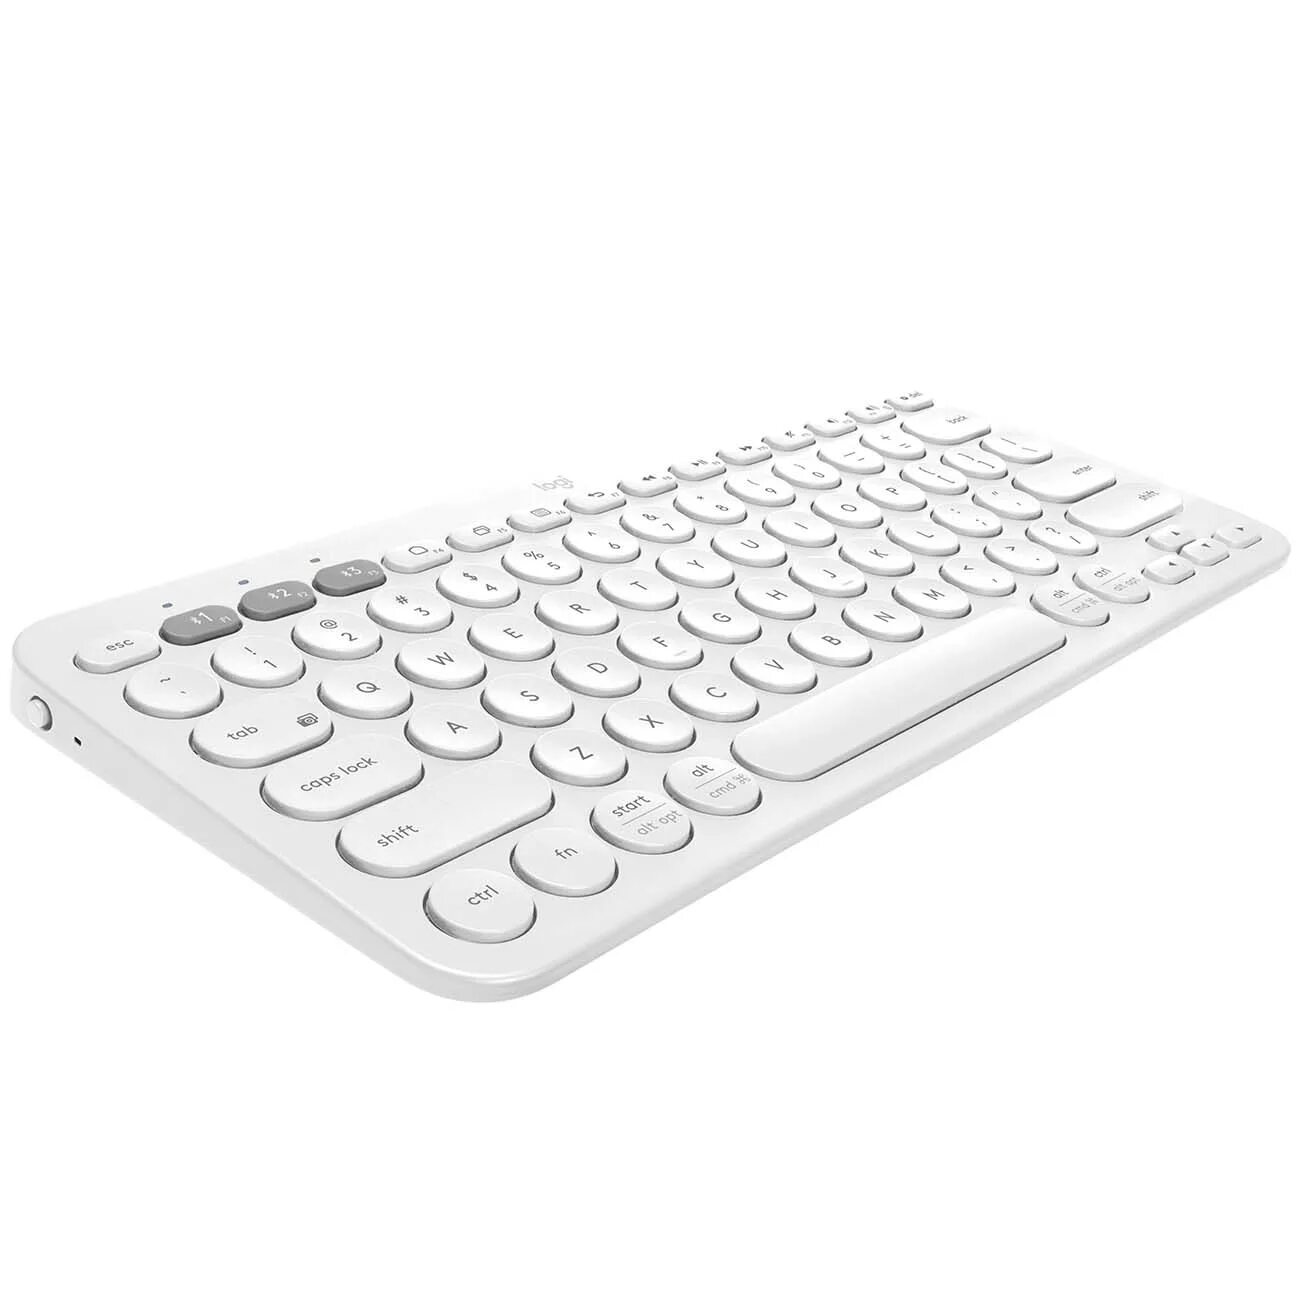 Клавиатура беспроводная Logitech k380. Клавиатура беспроводная Logitech k380 (920-009589). Клавиатура Logitech k380 Multi-device белая. Logitech k380 Multi-device Bluetooth Keyboard White. K380 multi device